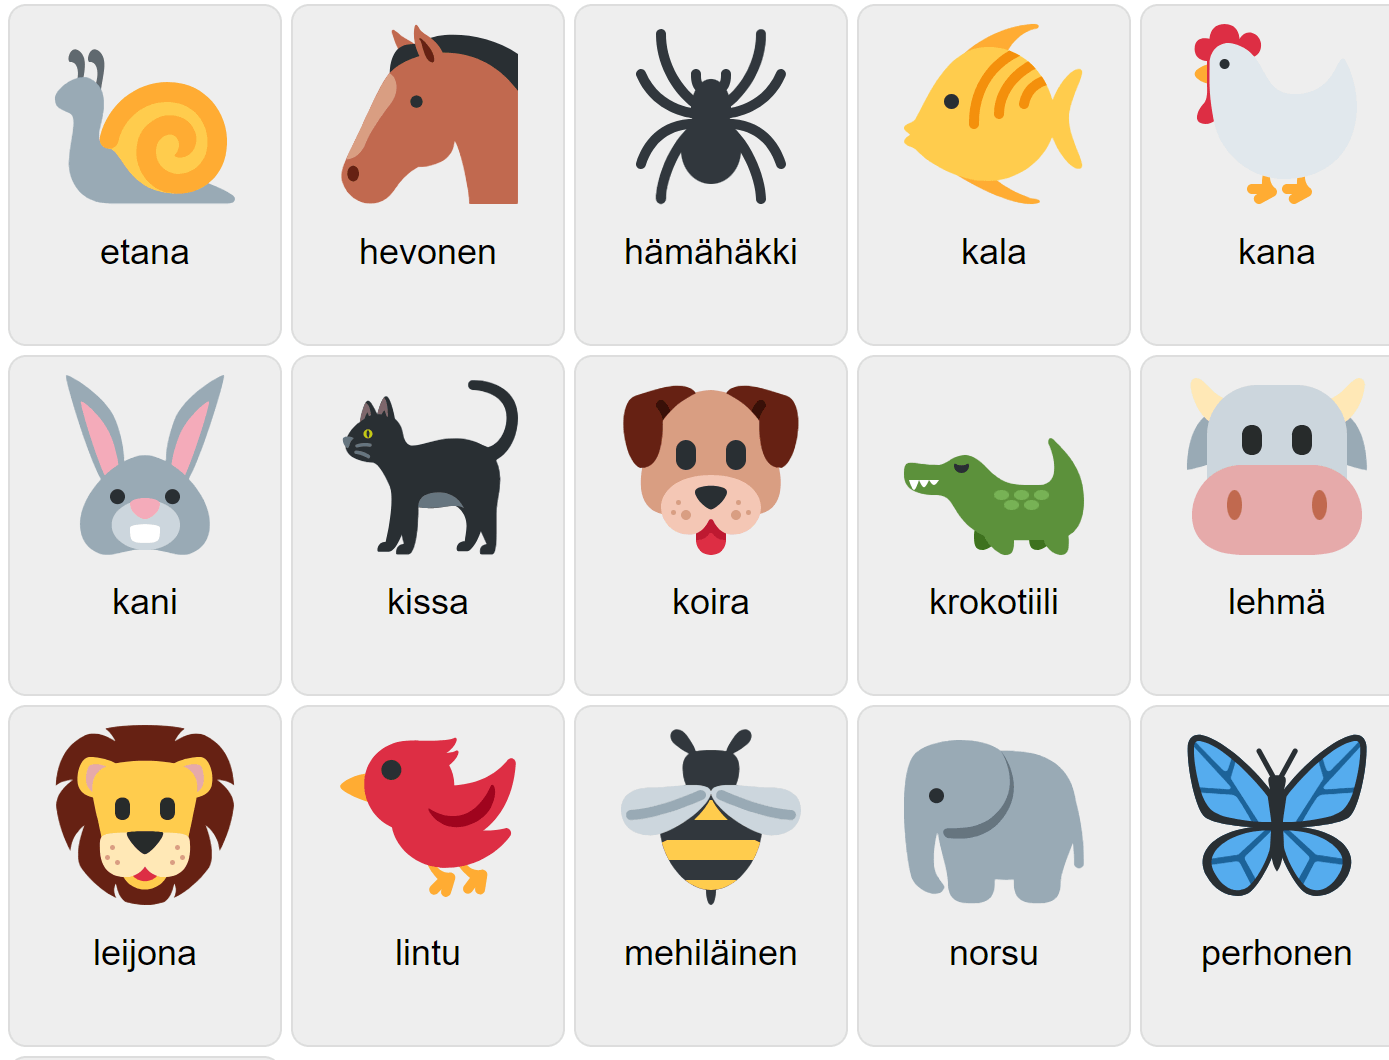 Tiere auf Finnisch